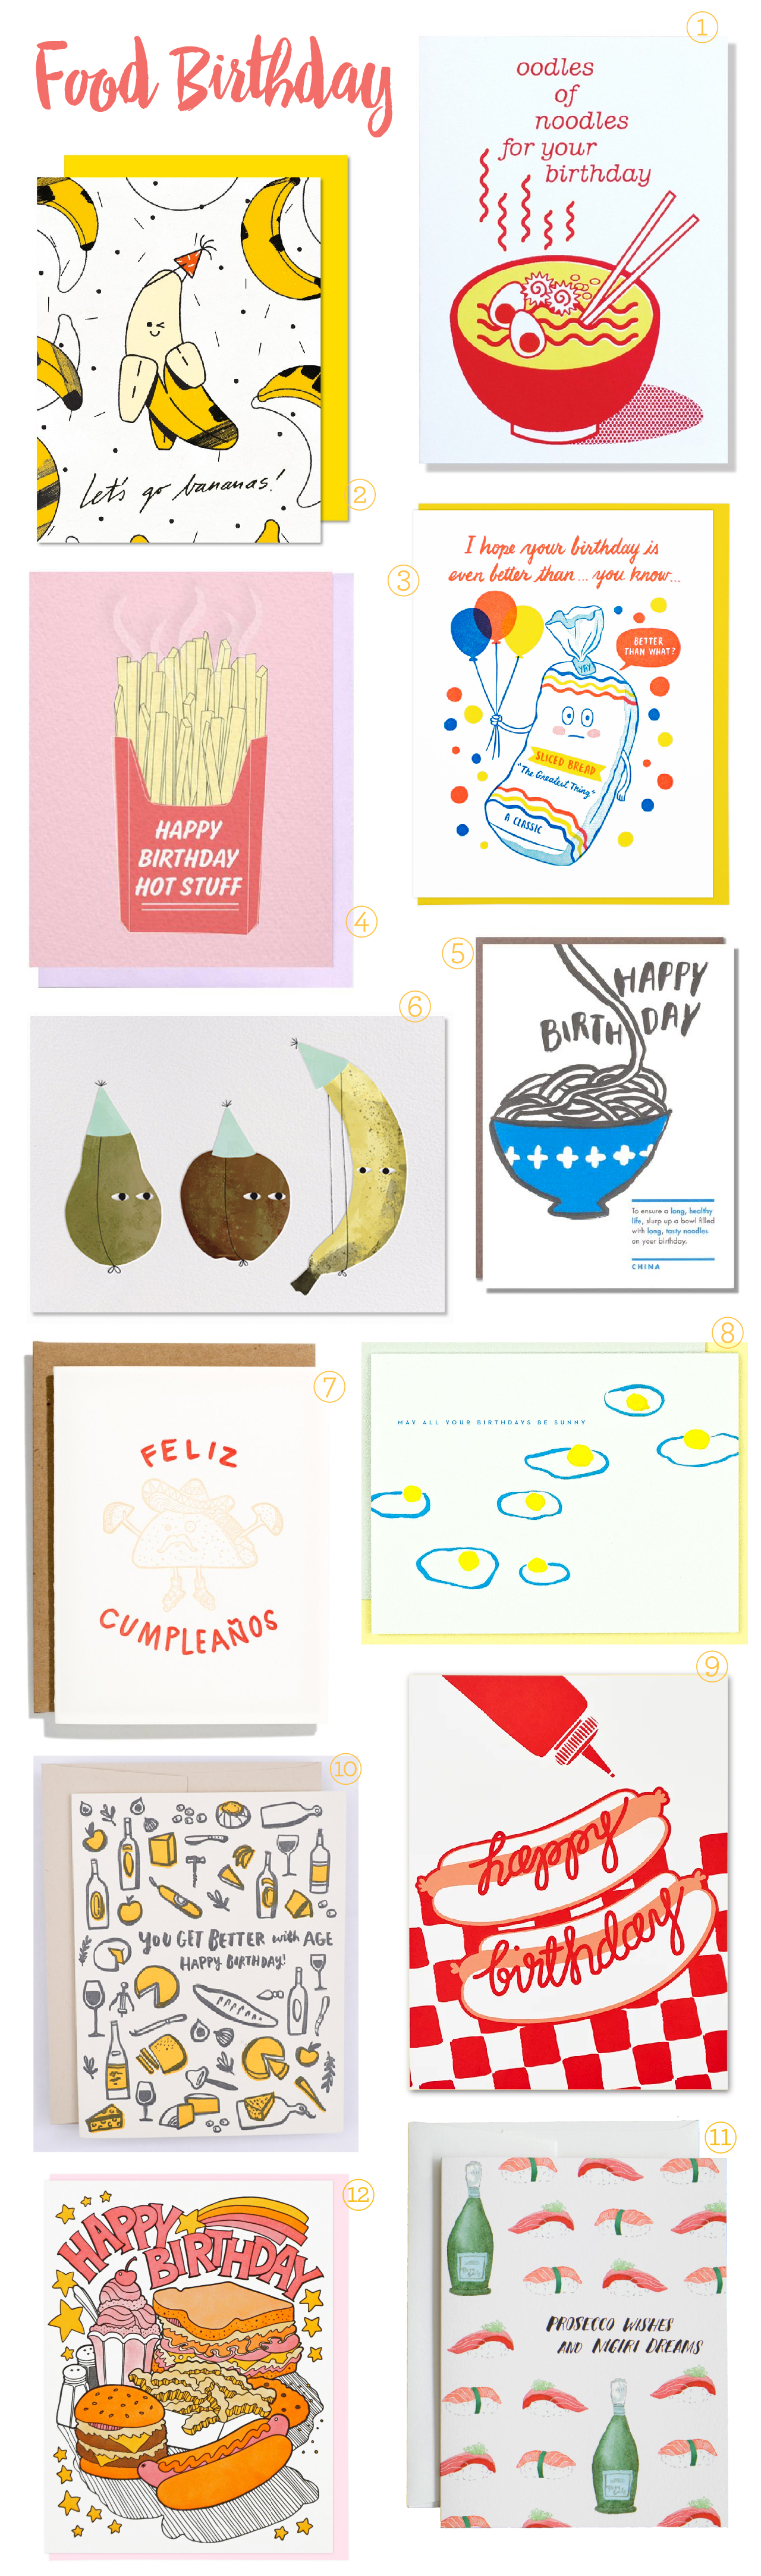 Food Birthday Cards